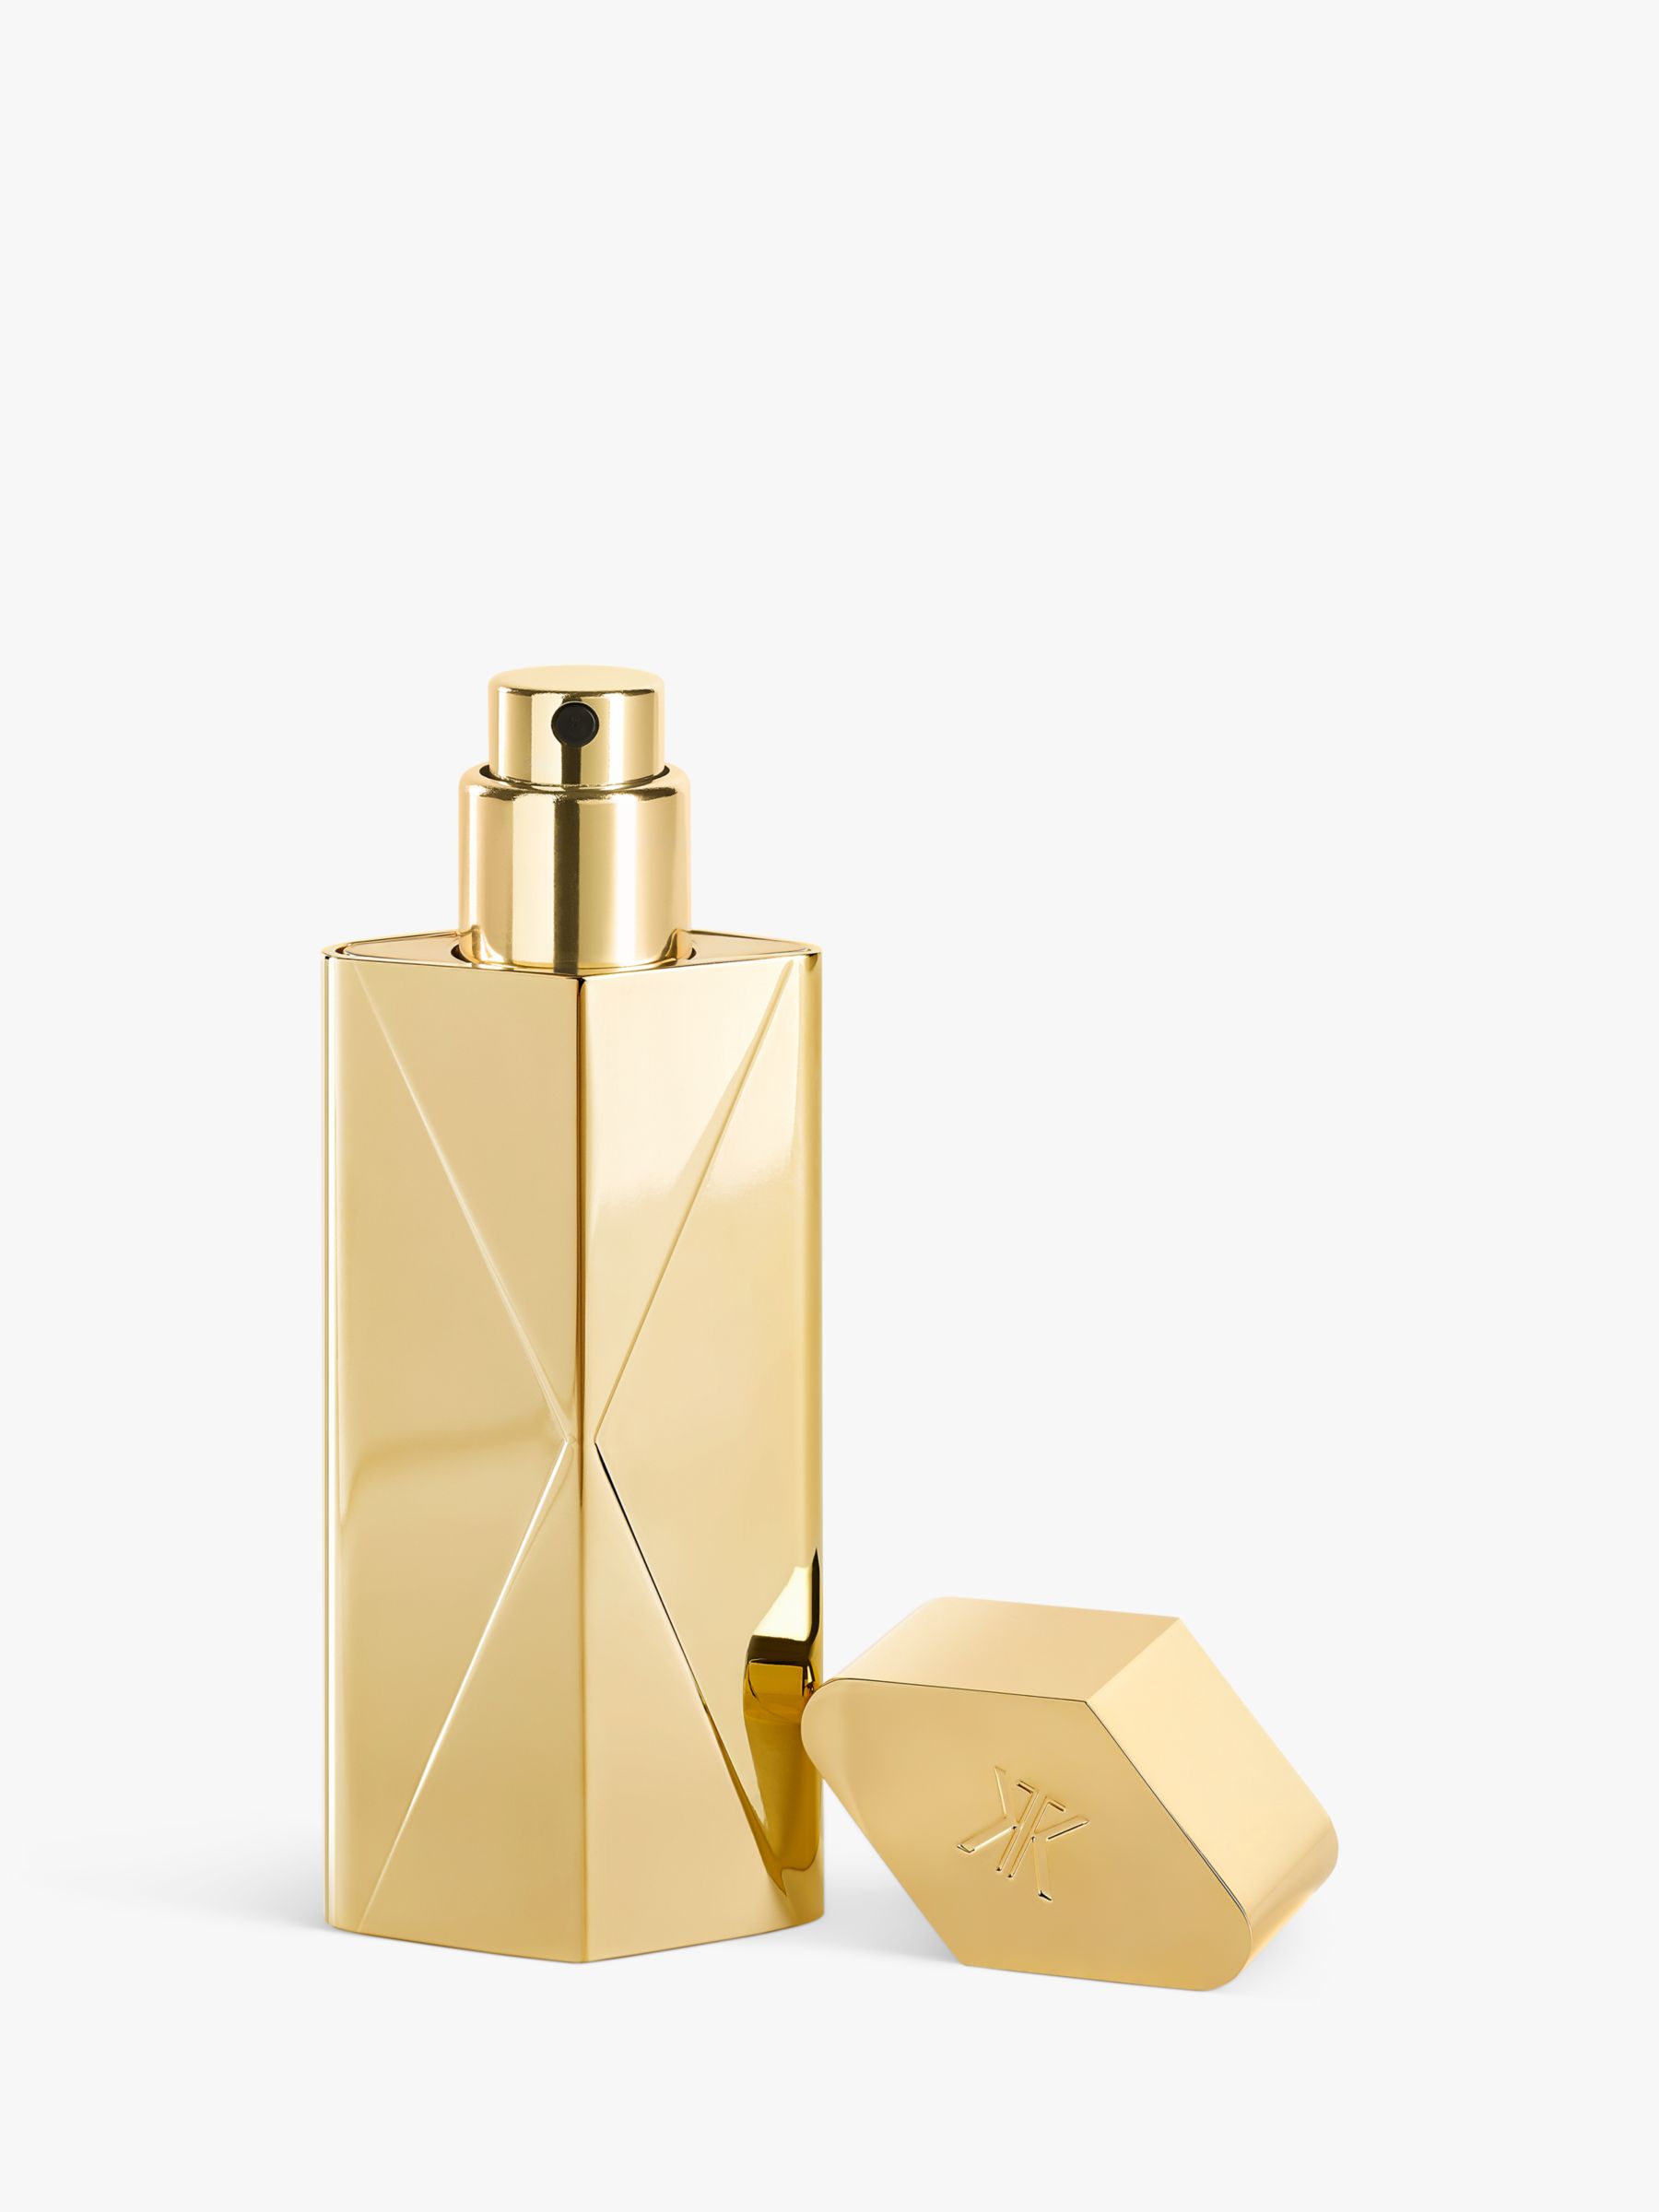 Maison Francis Kurkdjian Baccarat Rouge 540 Extrait de Parfum Travel Set 2